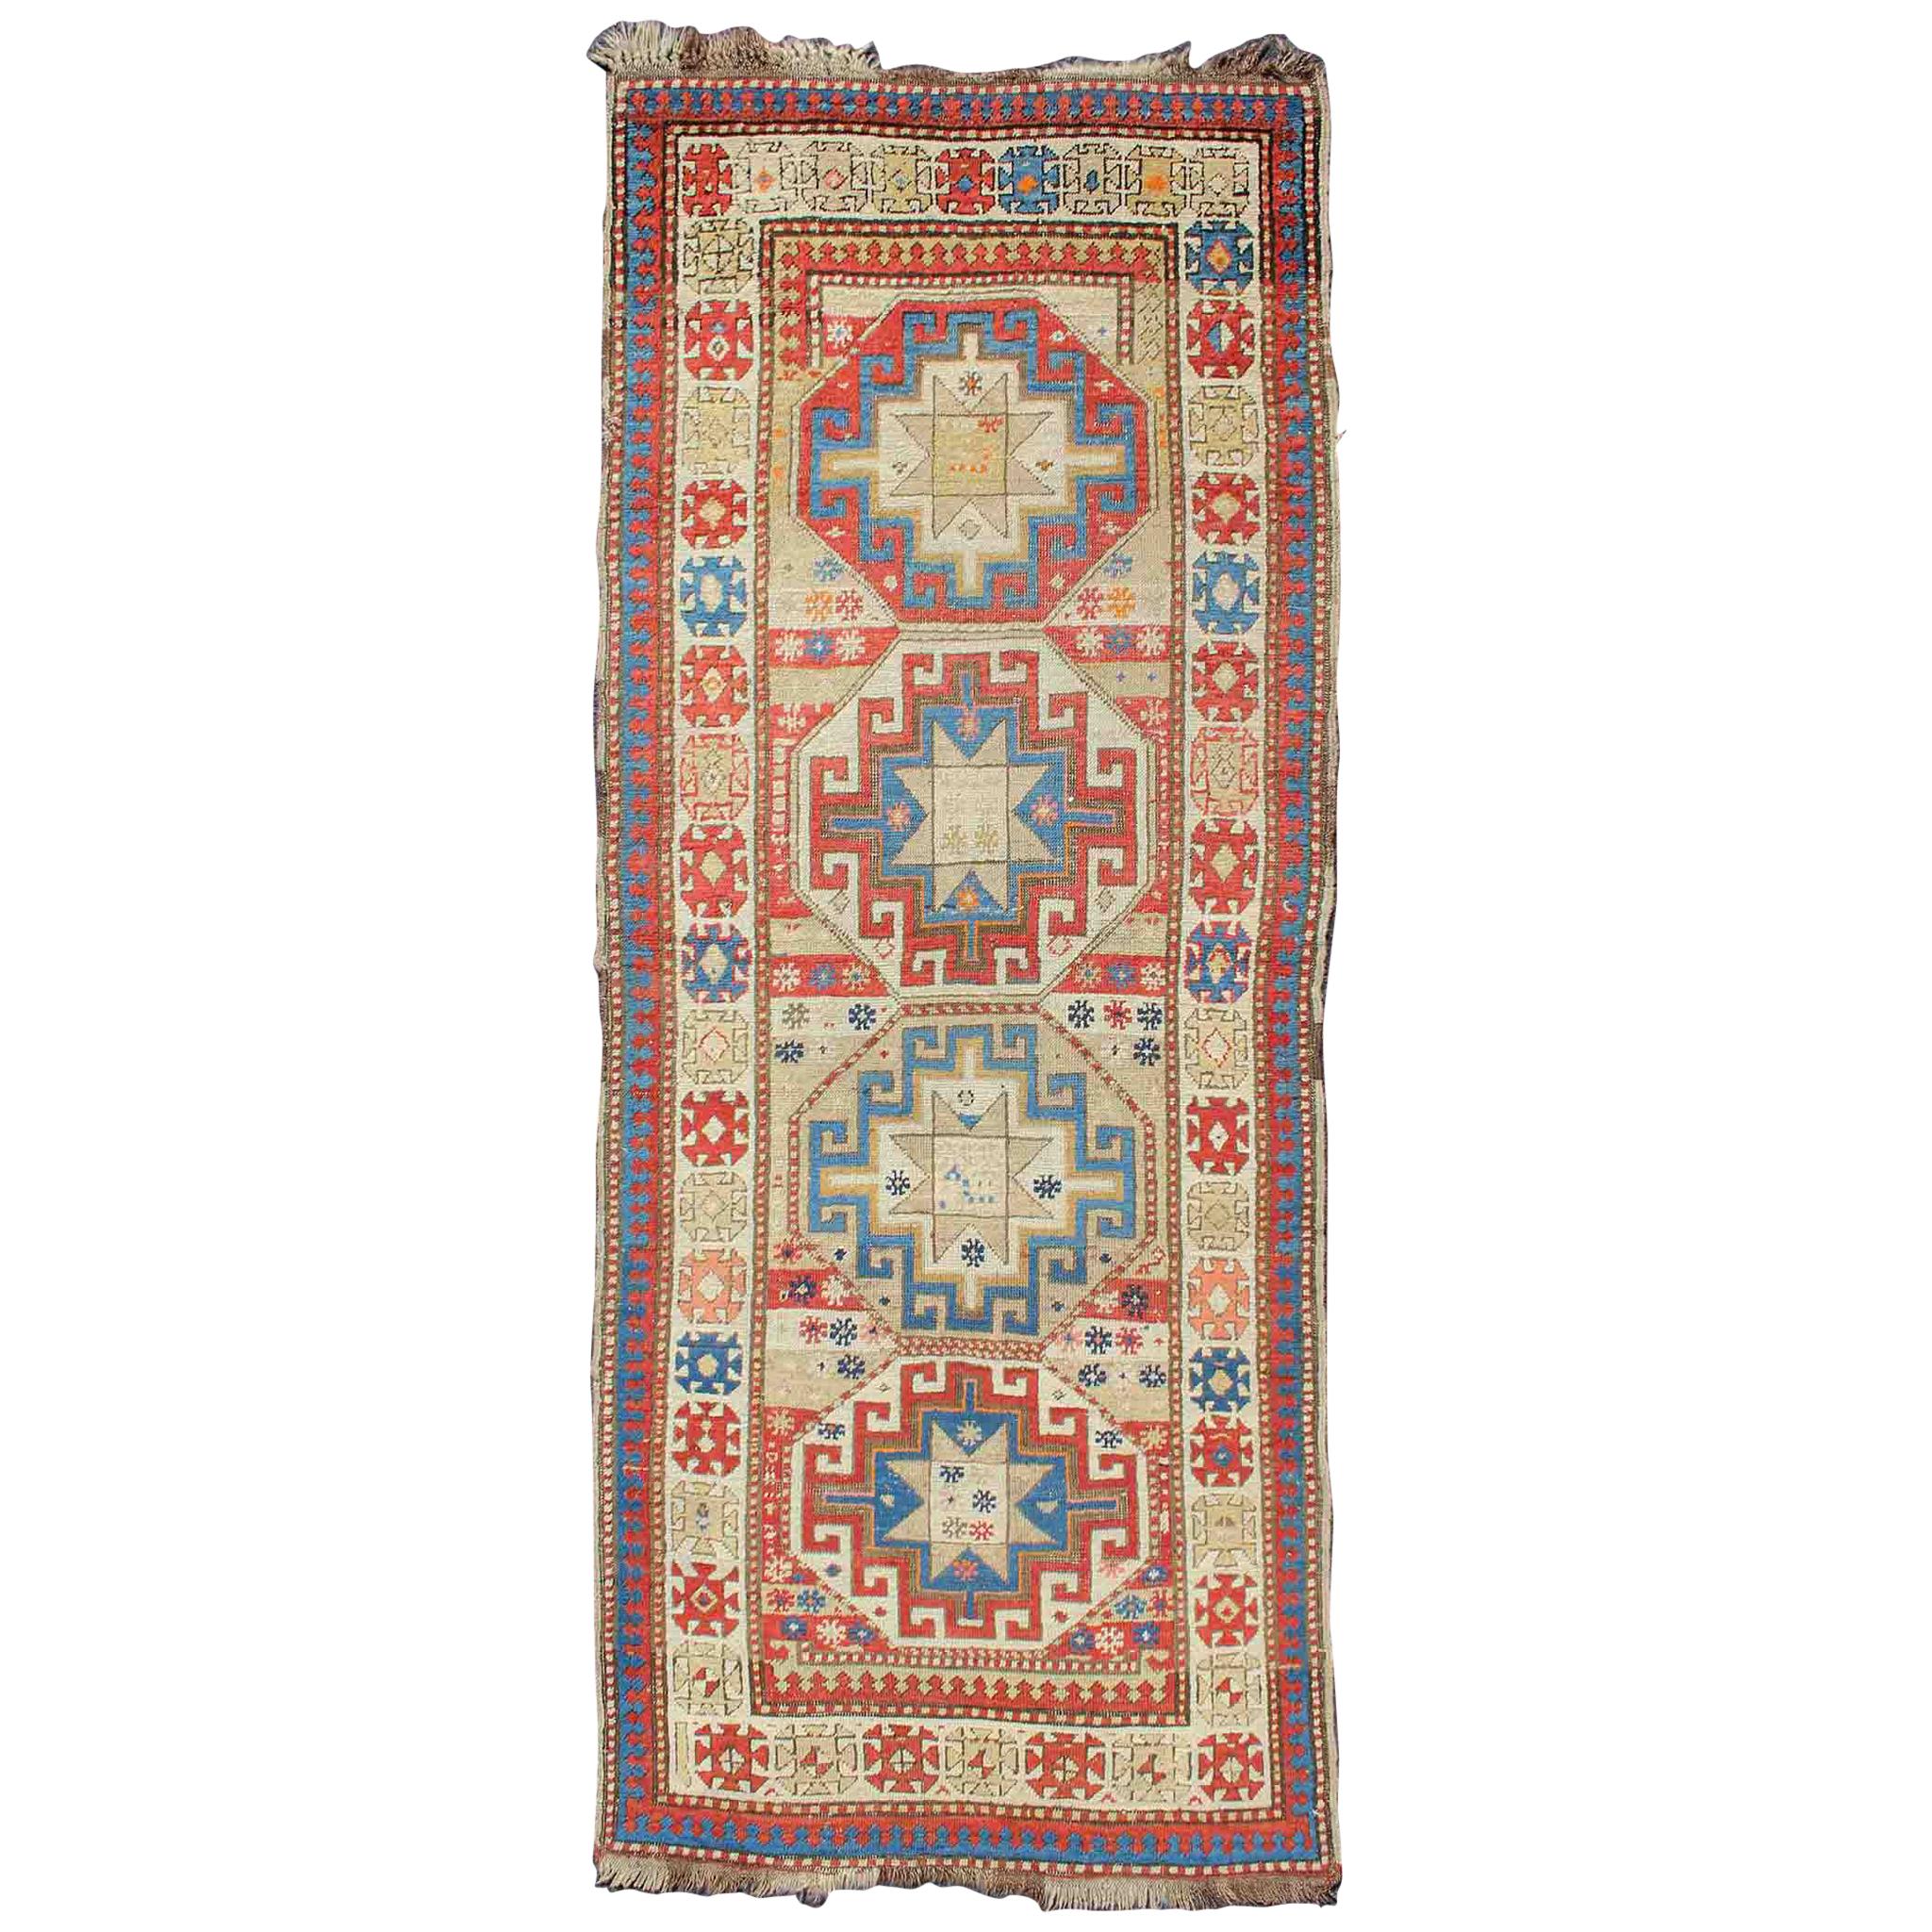 Tapis antique caucasien kazakh multicolore avec médaillons géométriques